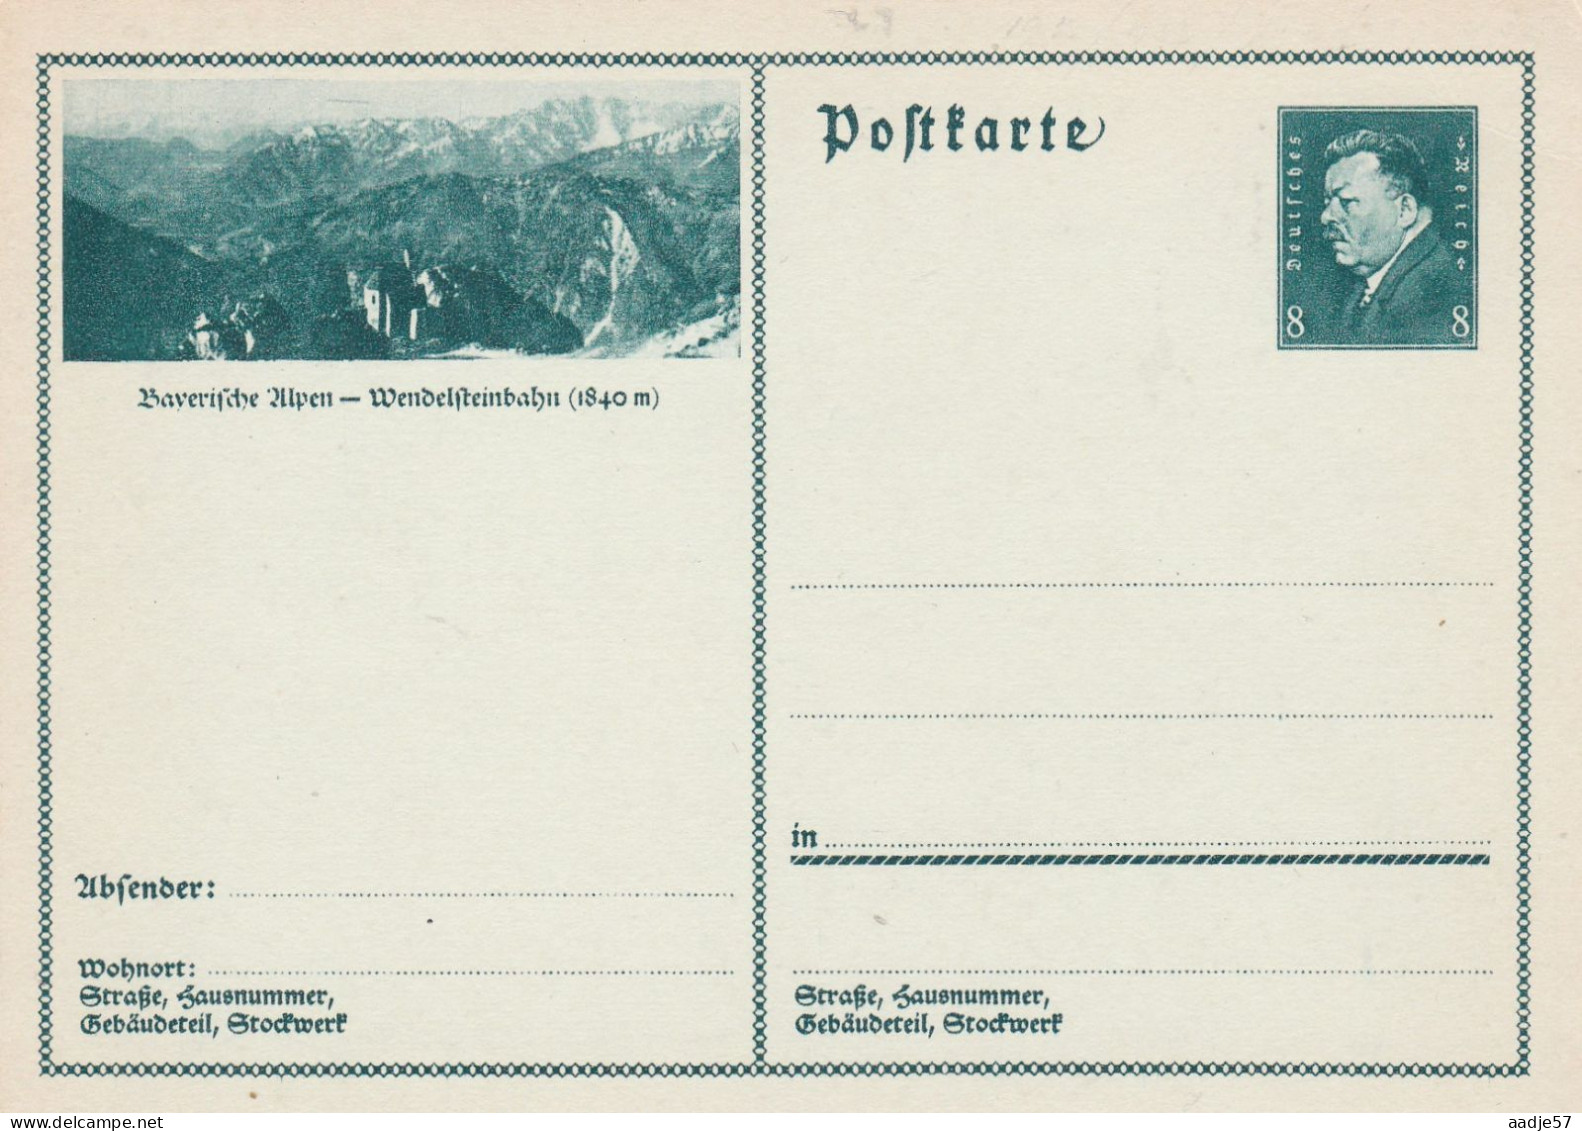 Besucht Baverische Alpen Wendelsteinbahn - Bildpostkarte 1931 -  Mint - Cartes Postales